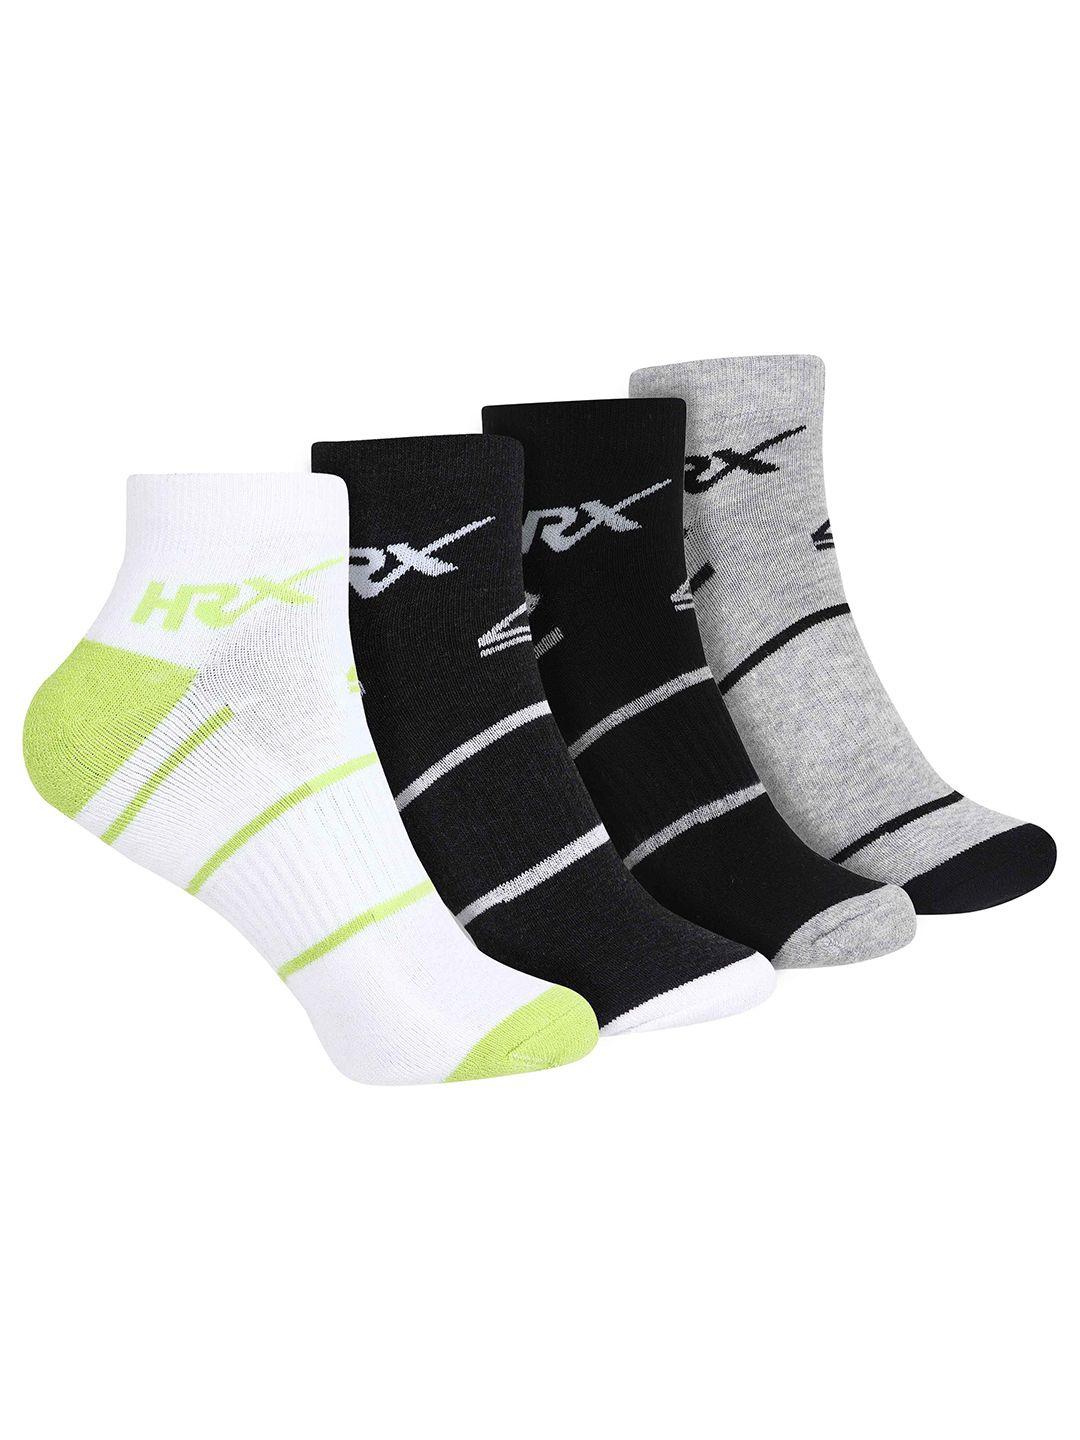 hrx by hrithik roshan men pack of 4 ankle-length  socks